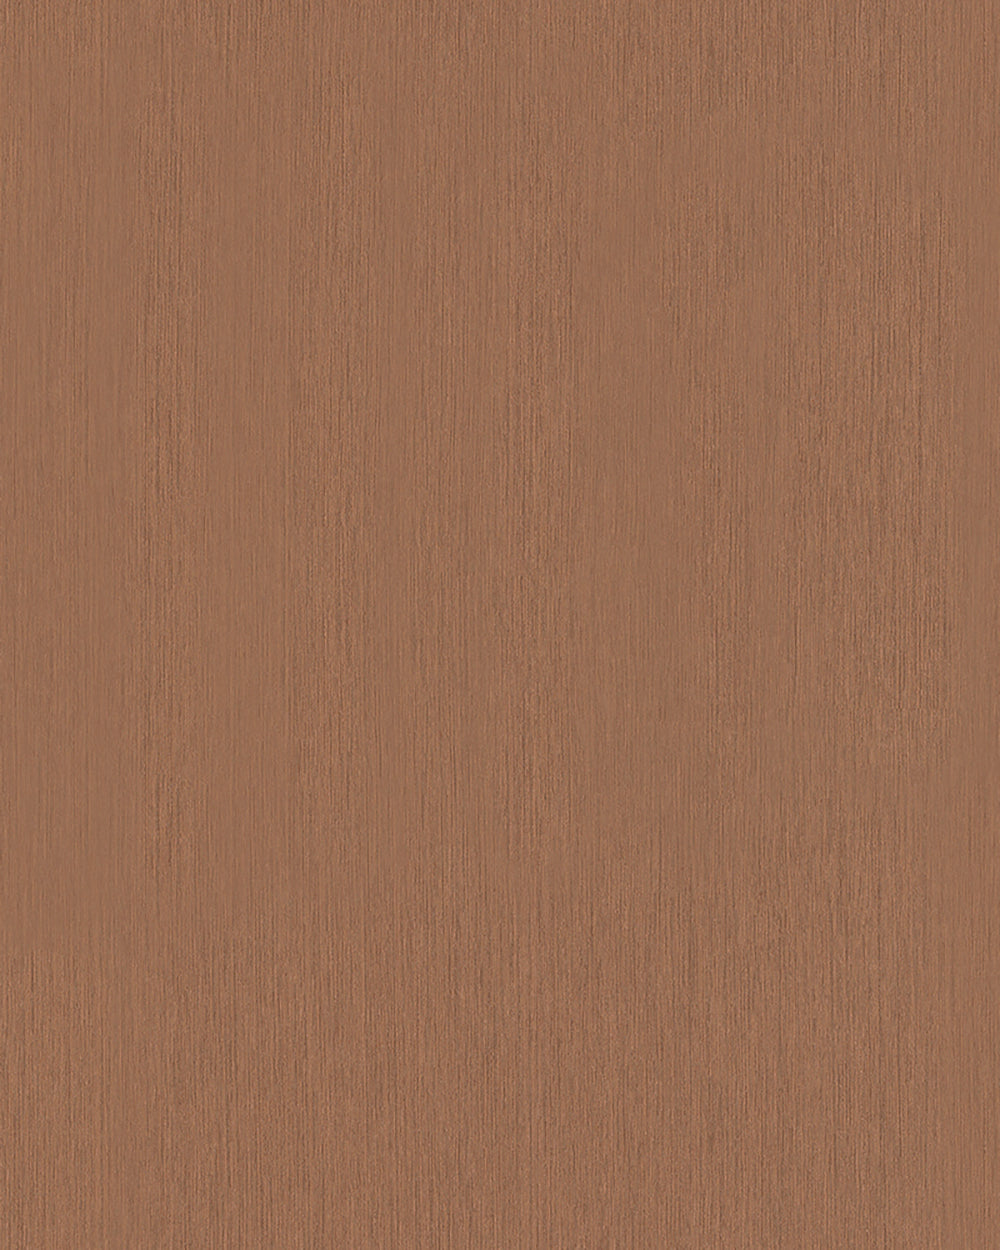 Modernista - Textured Plain plain wallpaper Marburg Roll Light Brown  32275